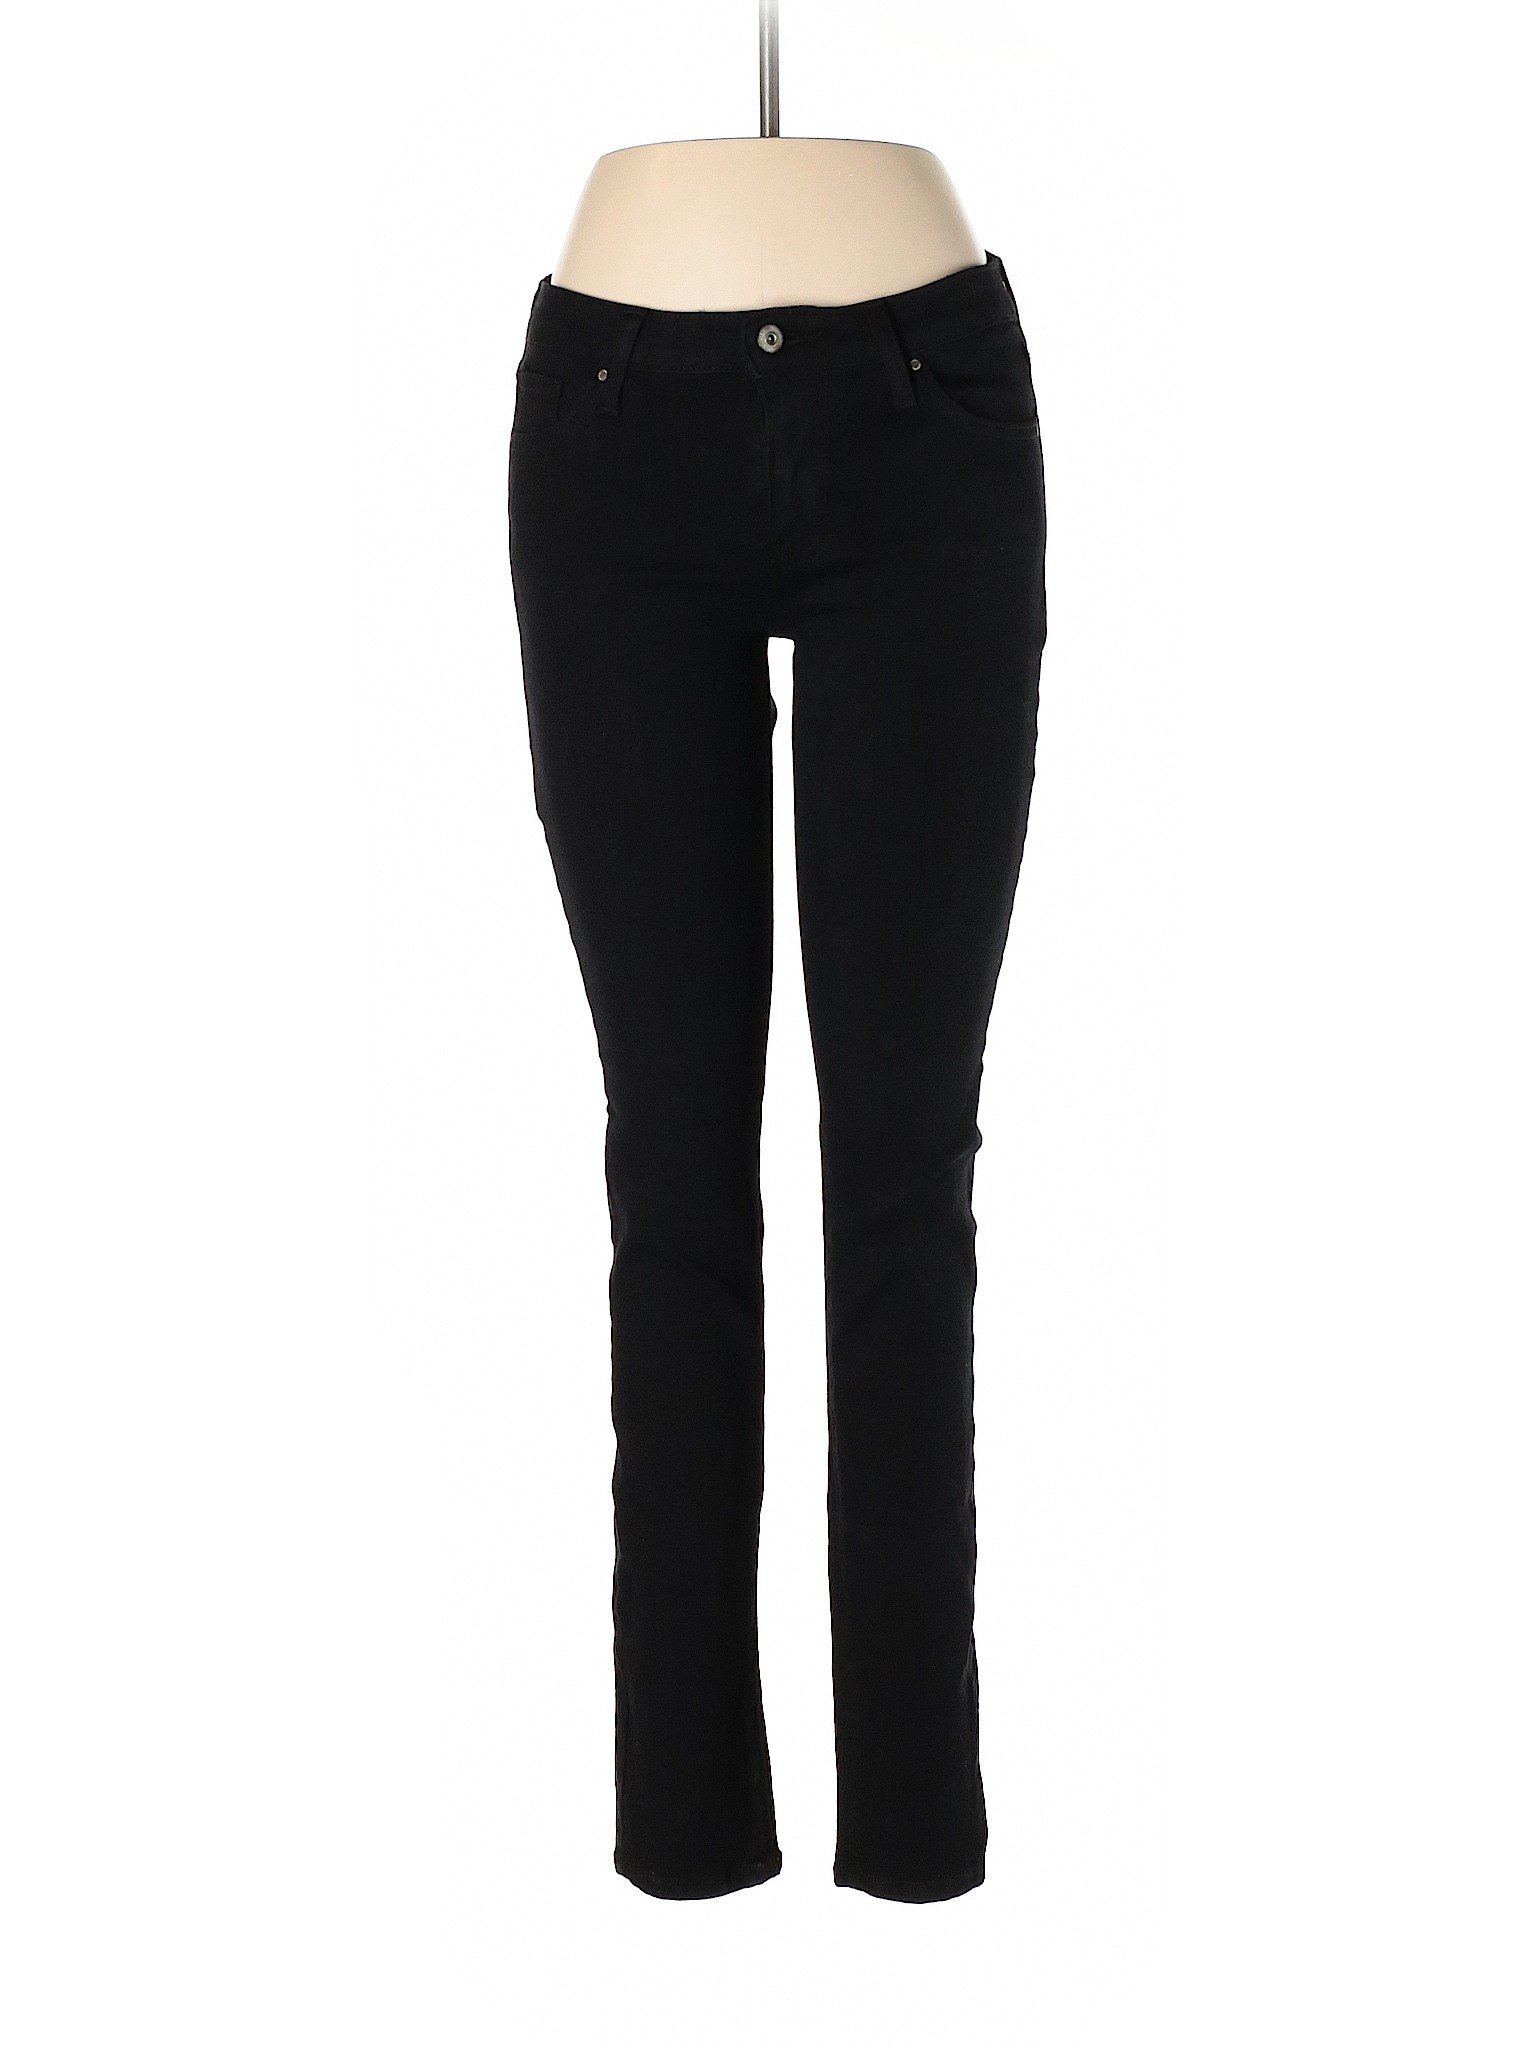 Just Black Women Black Jeans 27W | eBay